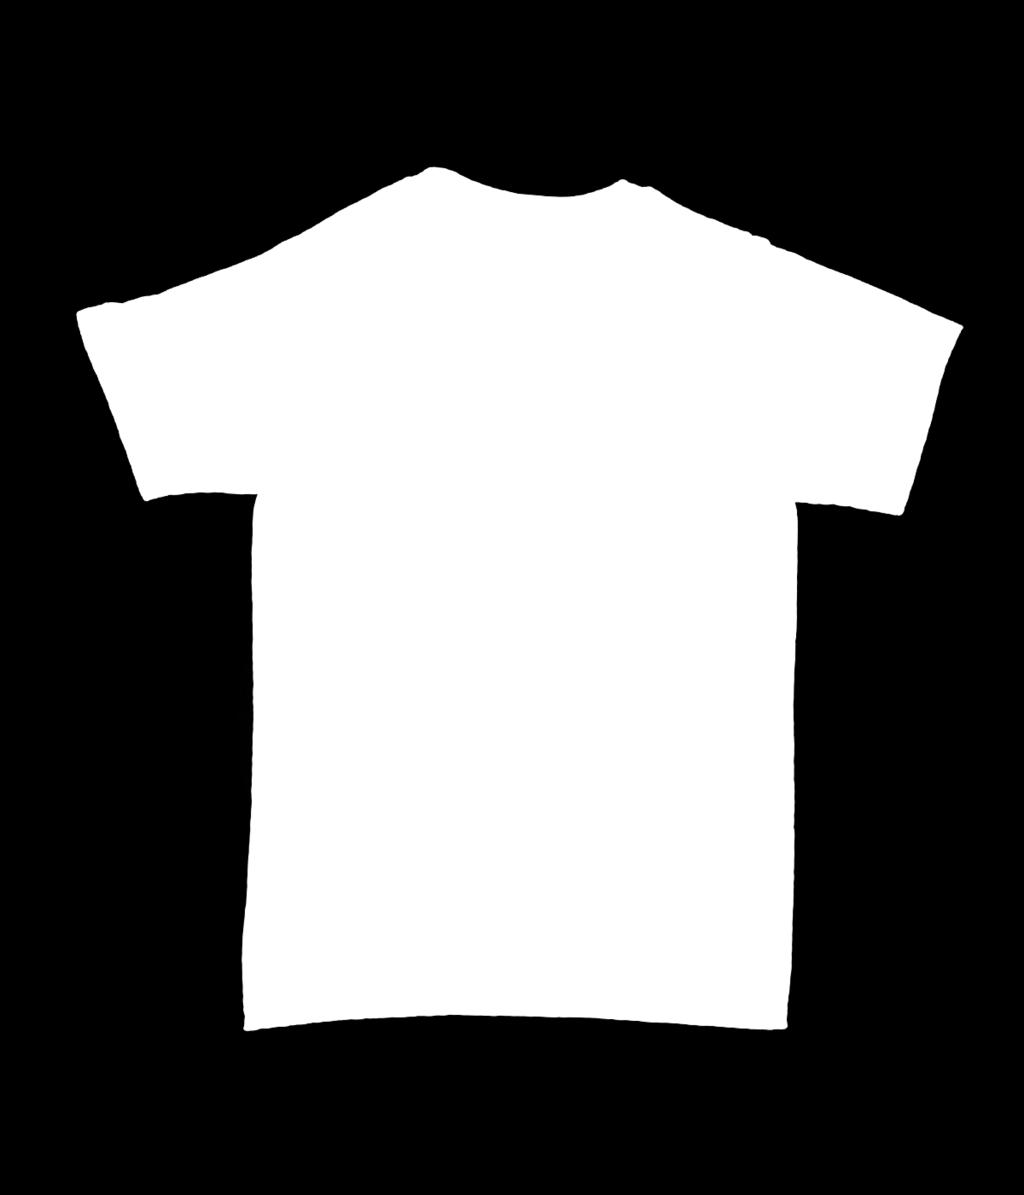 Aplicações Uniforme, Cordão para Crachá, Banner, Cartaz e Panfleto Camisa em malha PP (poliéster macio) estampada